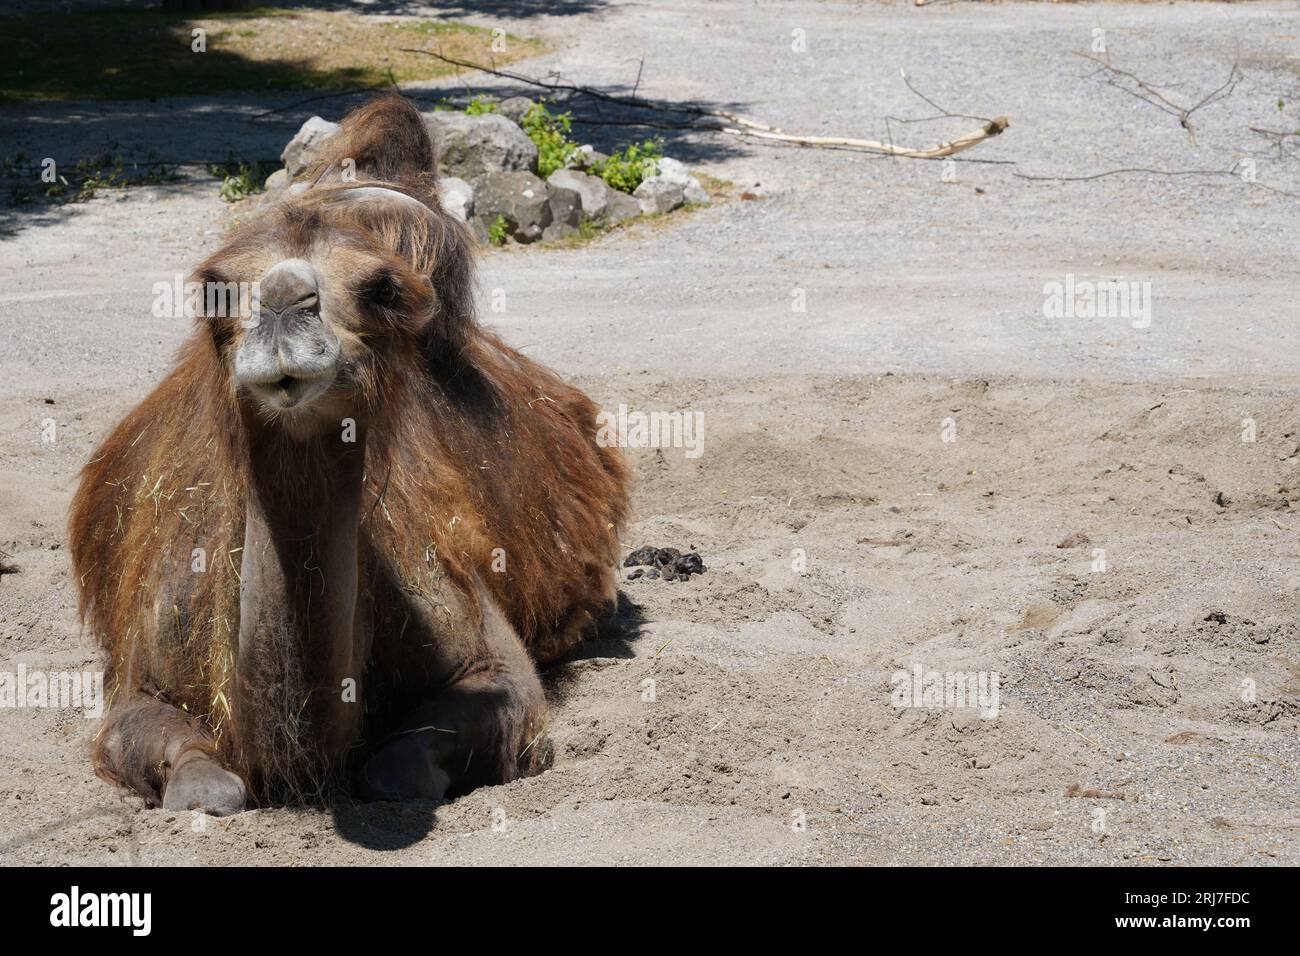 Das Bactrianische Kamel, auf lateinisch Camelus bactrianus genannt, ist auf dem Boden angesiedelt und schaut in die Kamera. Stockfoto